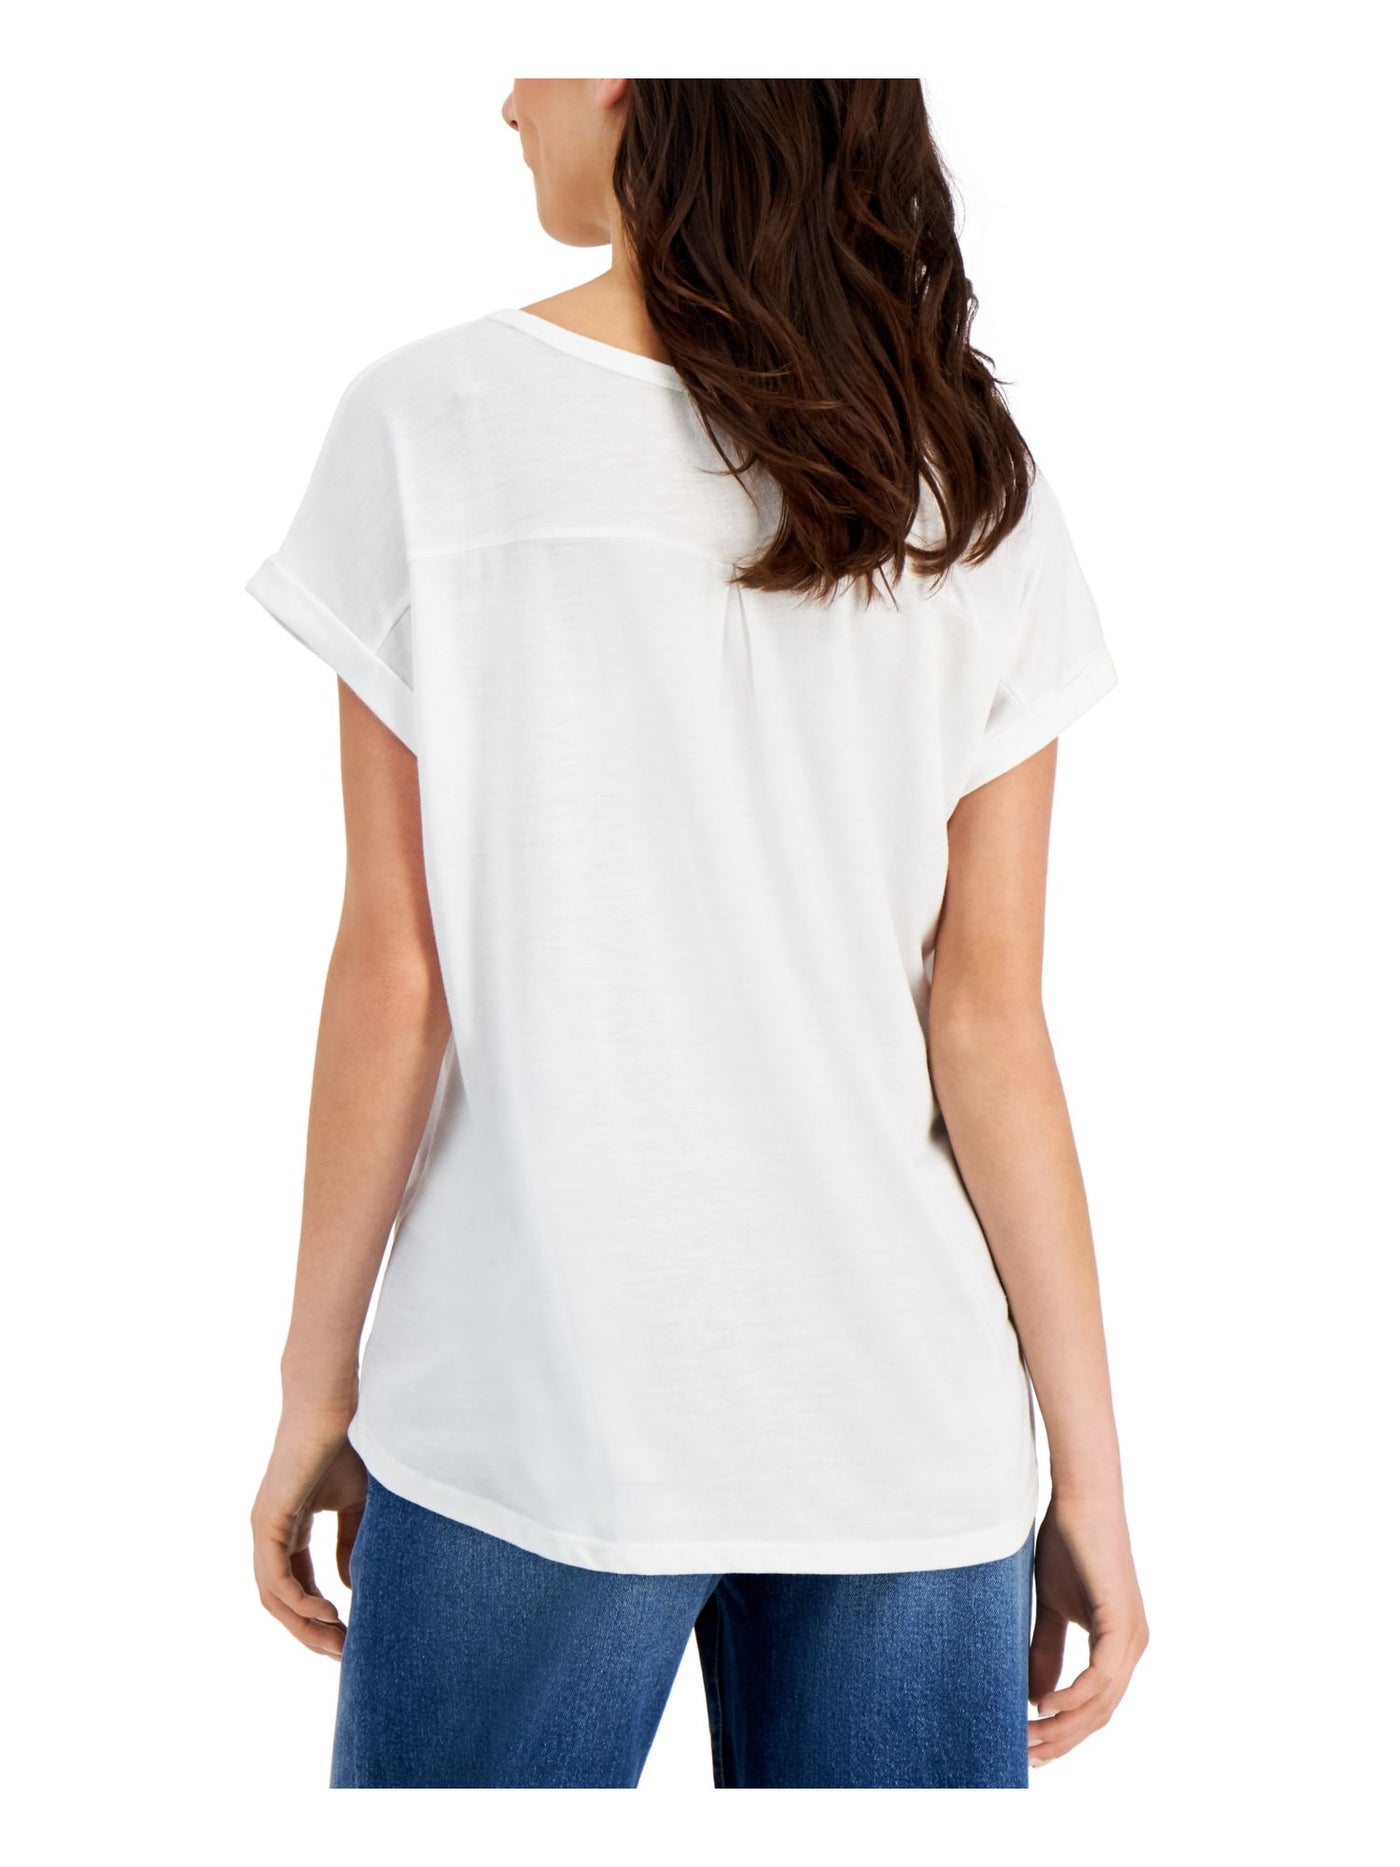 STYLE & COMPANY Womens Short Sleeve V Neck T-Shirt